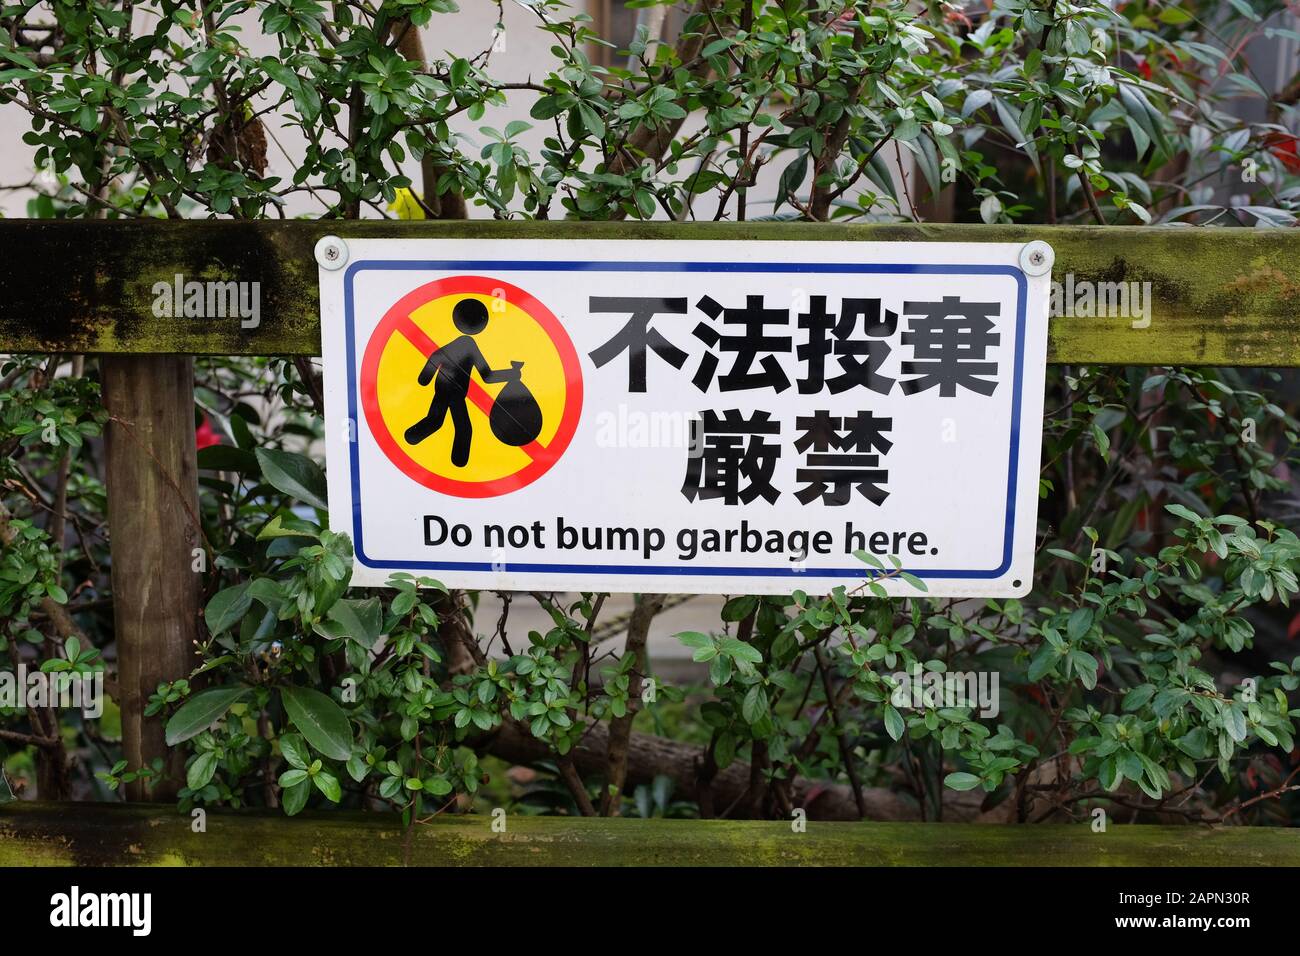 Un segno scritto in inglese e giapponese in esposizione in Giappone, ma con un errore di ortografia in inglese. Foto Stock